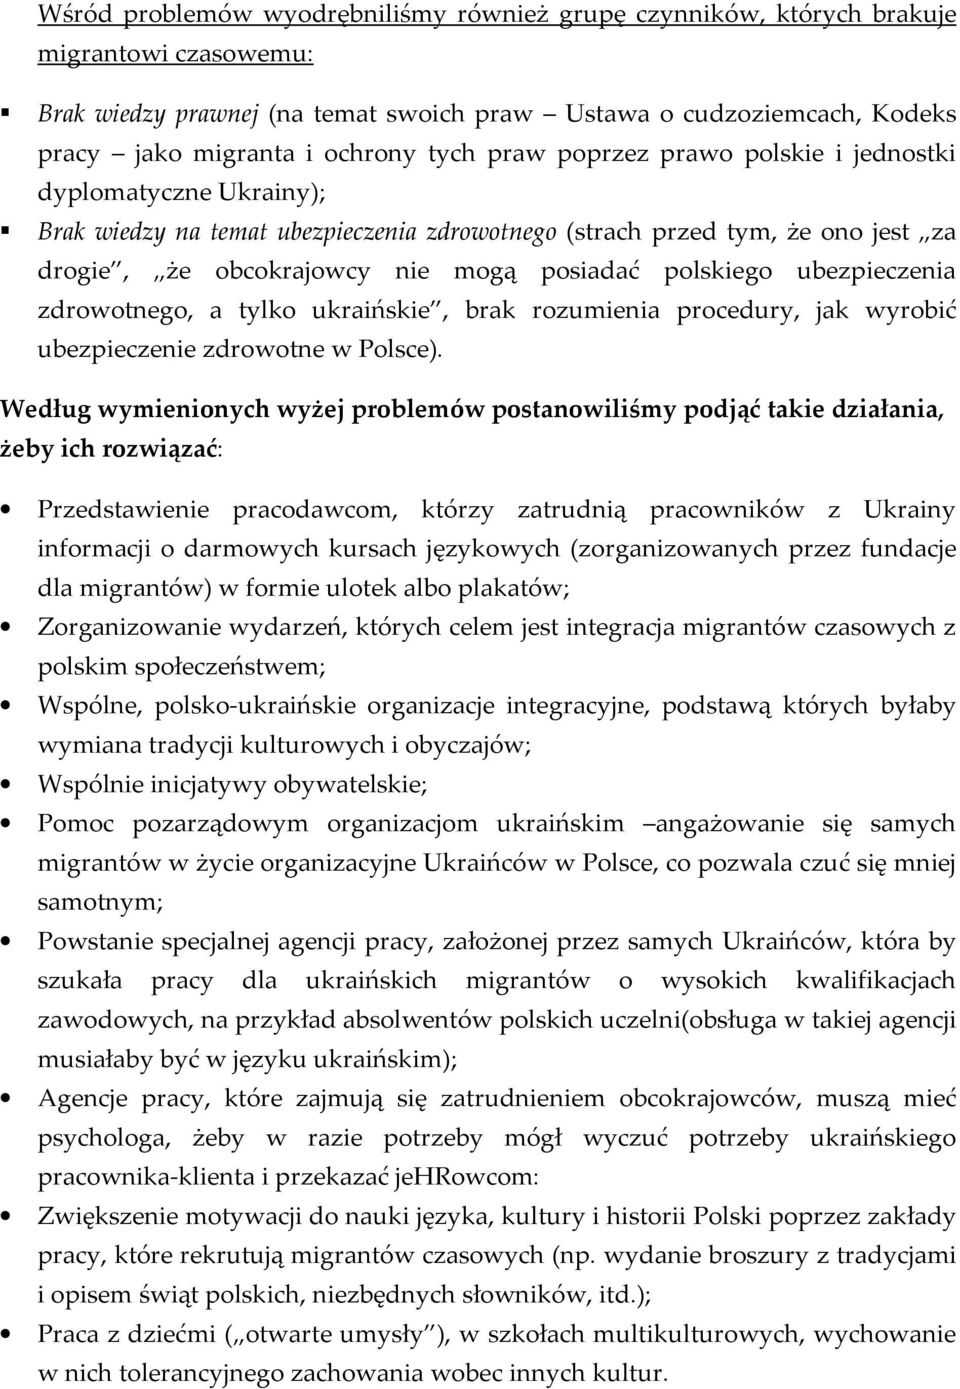 polskiego ubezpieczenia zdrowotnego, a tylko ukraińskie, brak rozumienia procedury, jak wyrobić ubezpieczenie zdrowotne w Polsce).